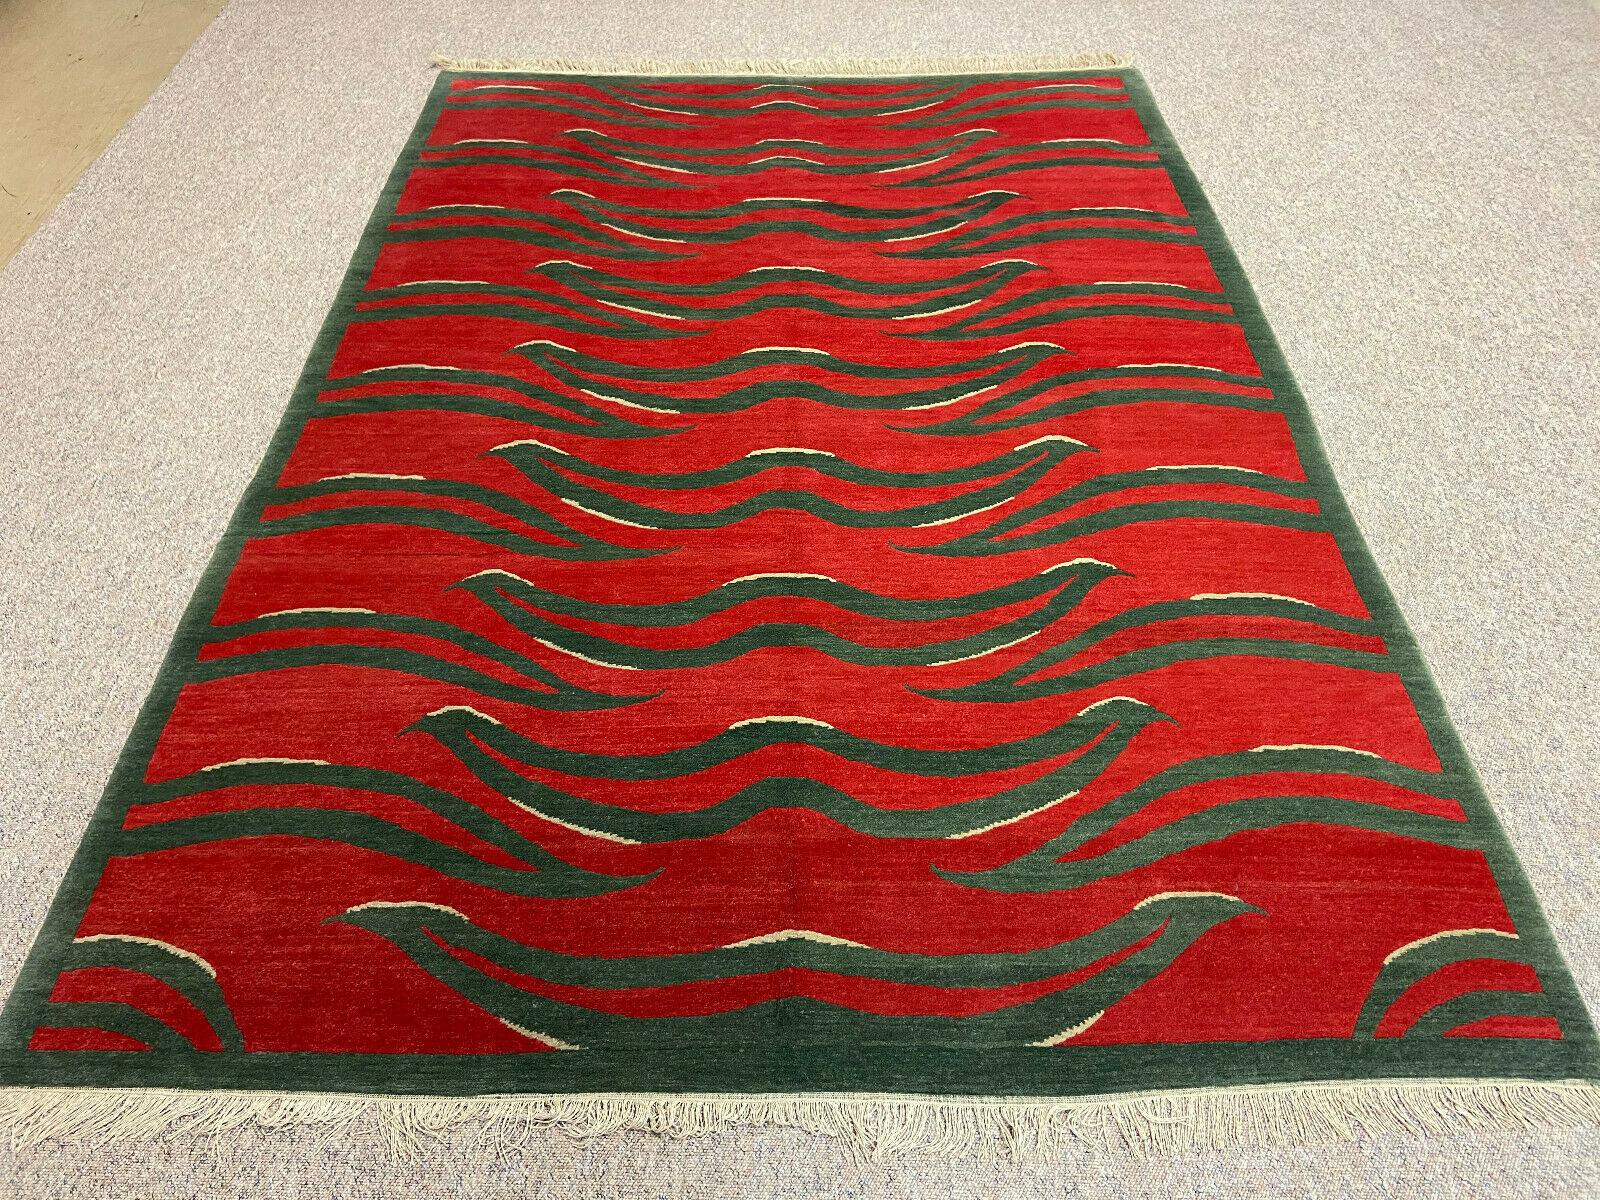 Un tapis tigré tibétain, noué à la main au Népal.

Ce motif traditionnel de tapis tigre se trouve généralement sur des tapis anciens appelés Khaden. Il s'agit d'un tapis de petite taille, d'environ 3 x 6 pieds, qui était utilisé au Tibet pour